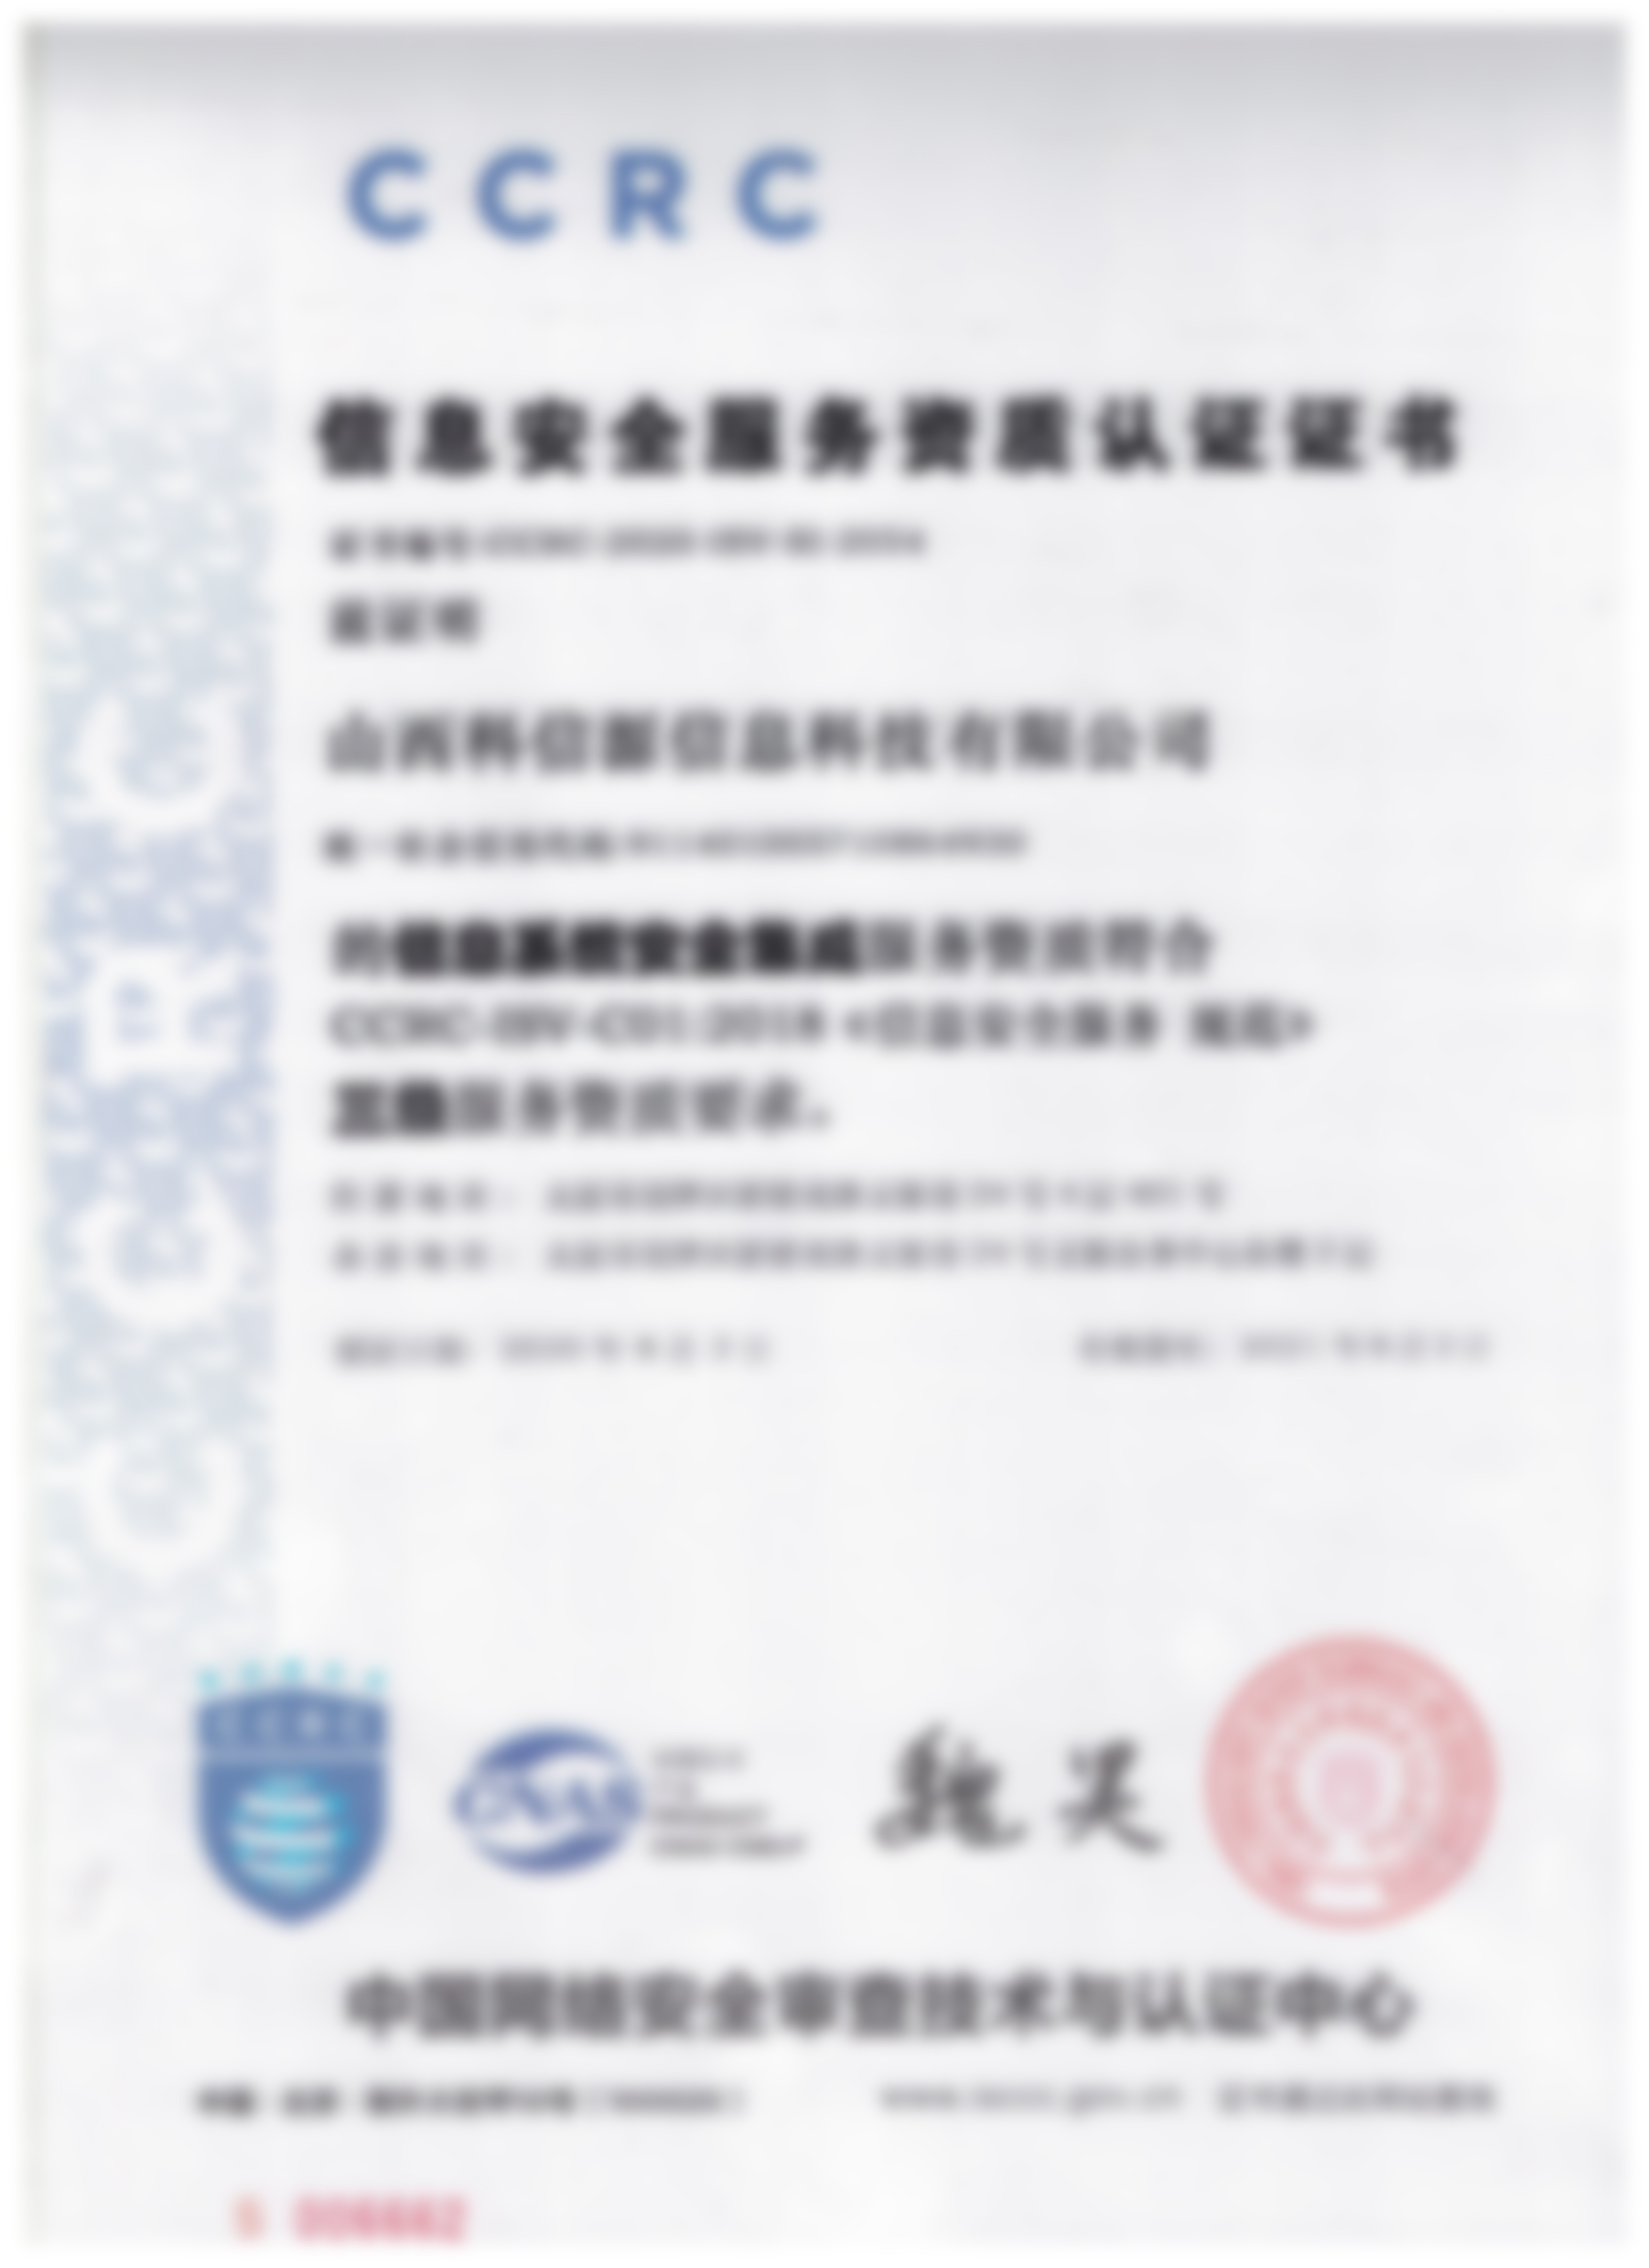 3776信息安全服務資(zī)質認證證書(shū)